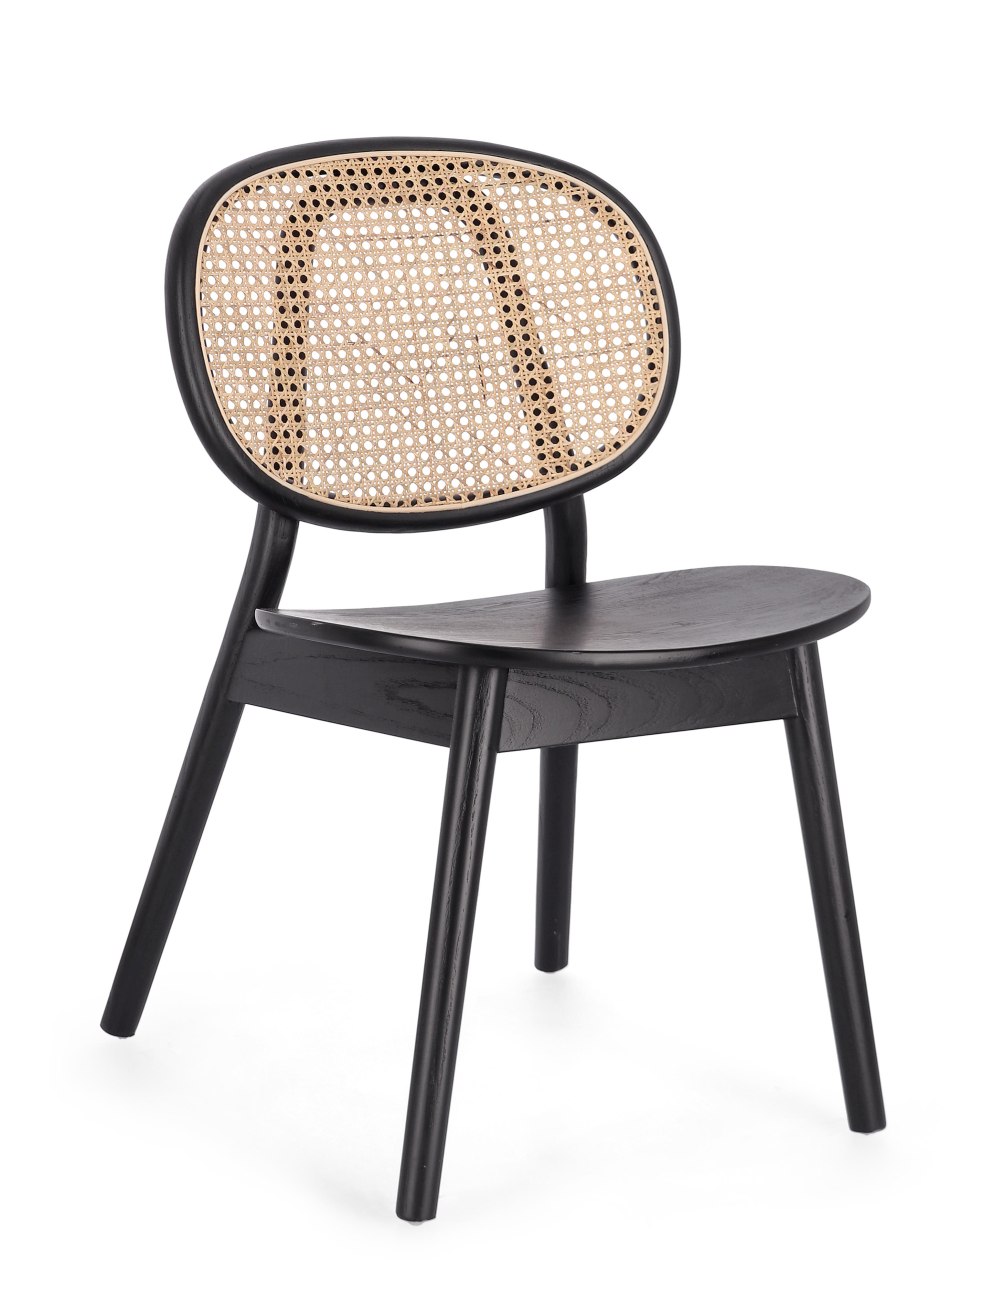 Der Esszimmerstuhl Adolis überzeugt mit seinem modernen Stil. Gefertigt wurde er aus Ulmmenholz, welcher einen schwarzen Farbton besitzt. Die Rückenlehne ist aus Rattan und hat eine natürliche Farbe. Der Stuhl besitzt eine Sitzhöhe von 46 cm.